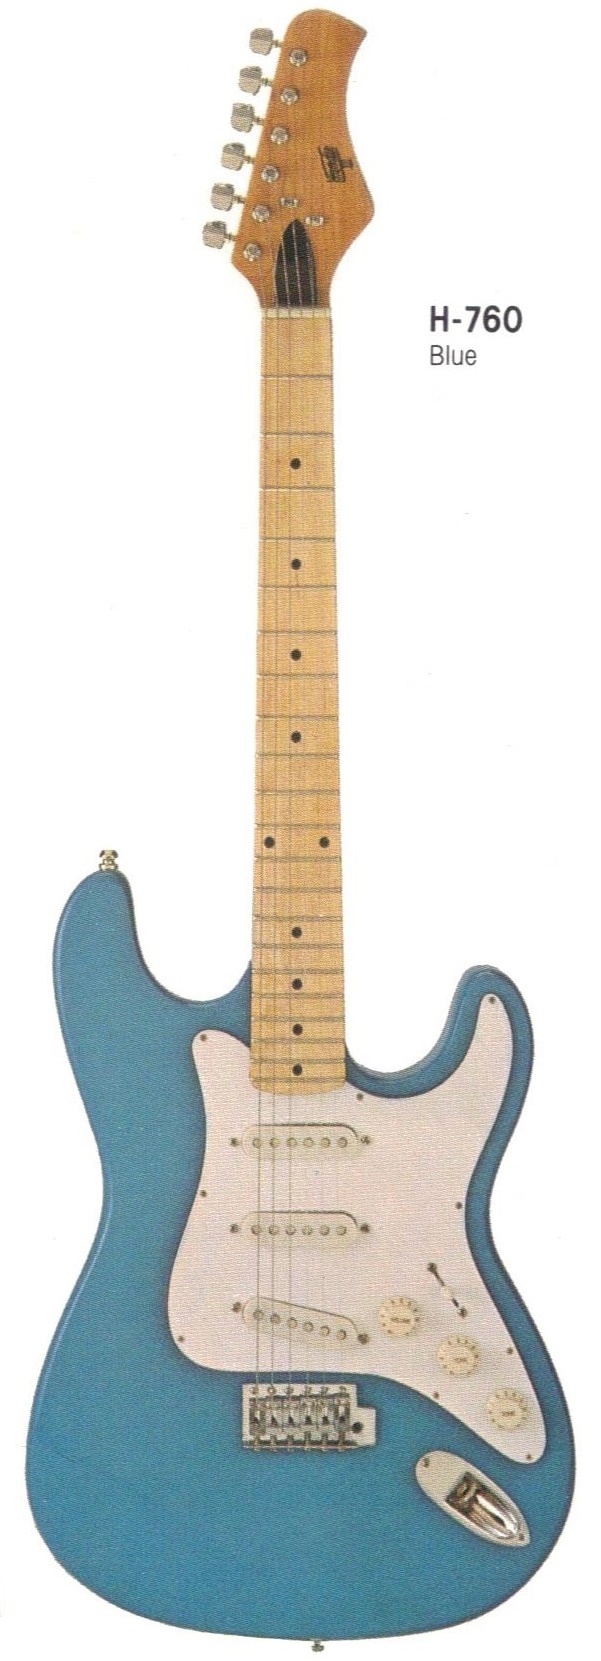 Hondo Guitar Serial Numbers